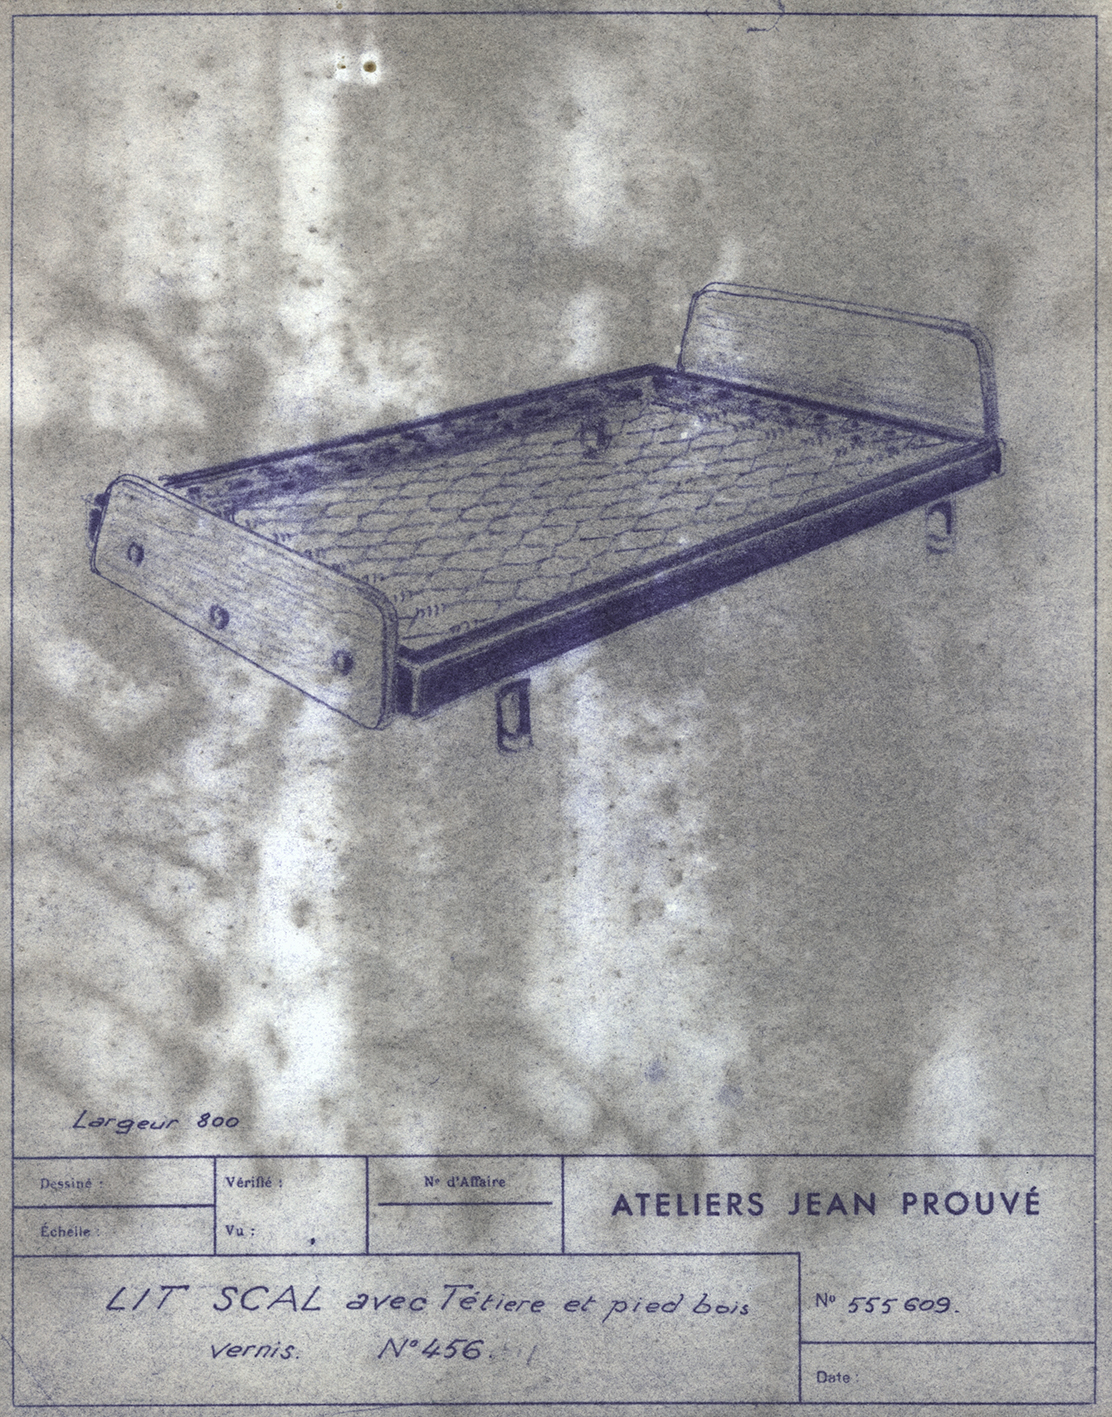 « Lit SCAL n° 456 ». Fiche descriptive Ateliers Jean Prouvé n° 555.609, c. 1953.